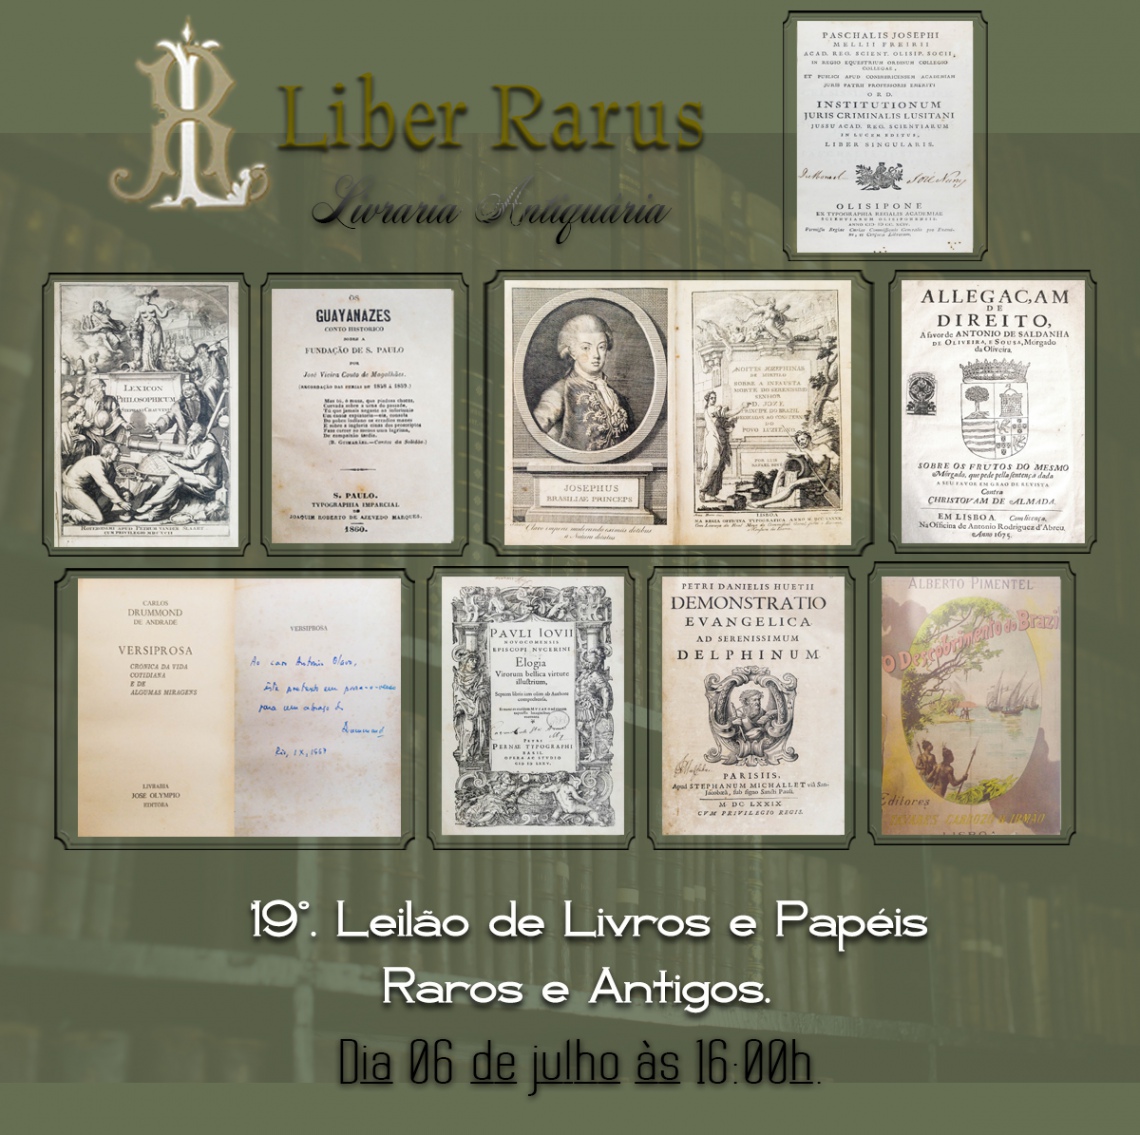 19º Leilão de Livros e Papéis Raros e Antigos - Liber Rarus - 06/07/2021 - 16h00